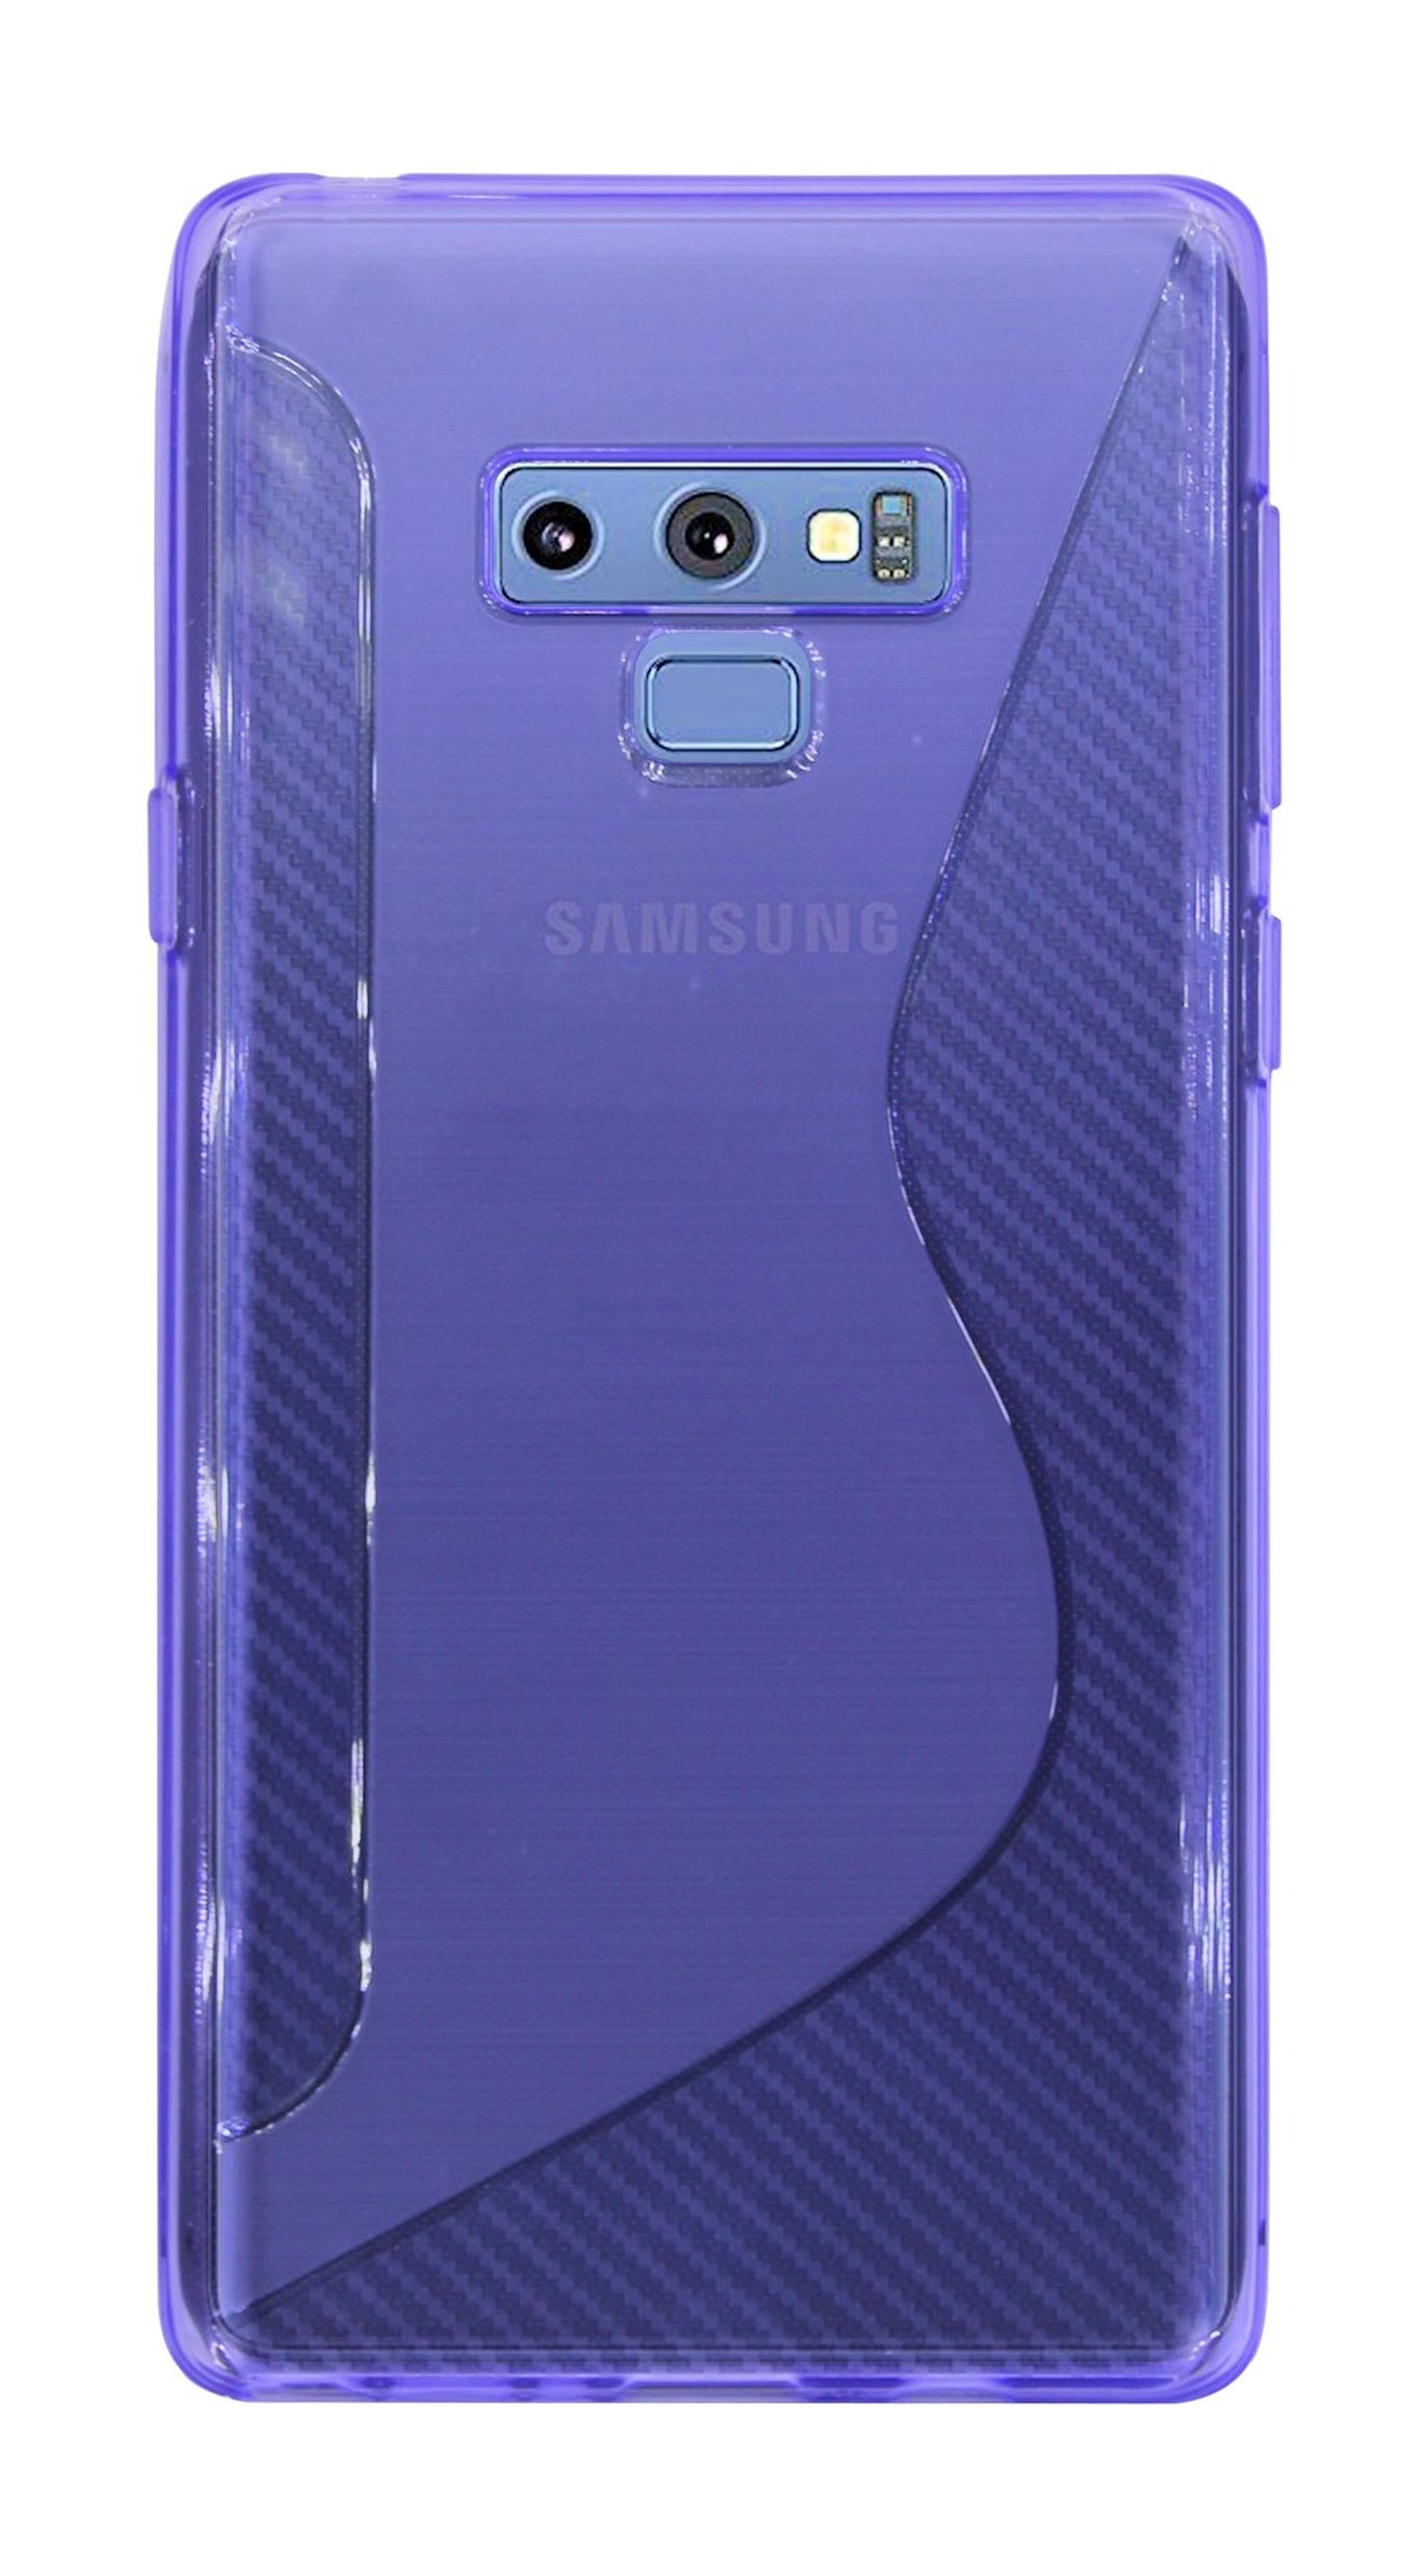 9, Note Bumper, Galaxy Violett S-Line Cover, Samsung, COFI